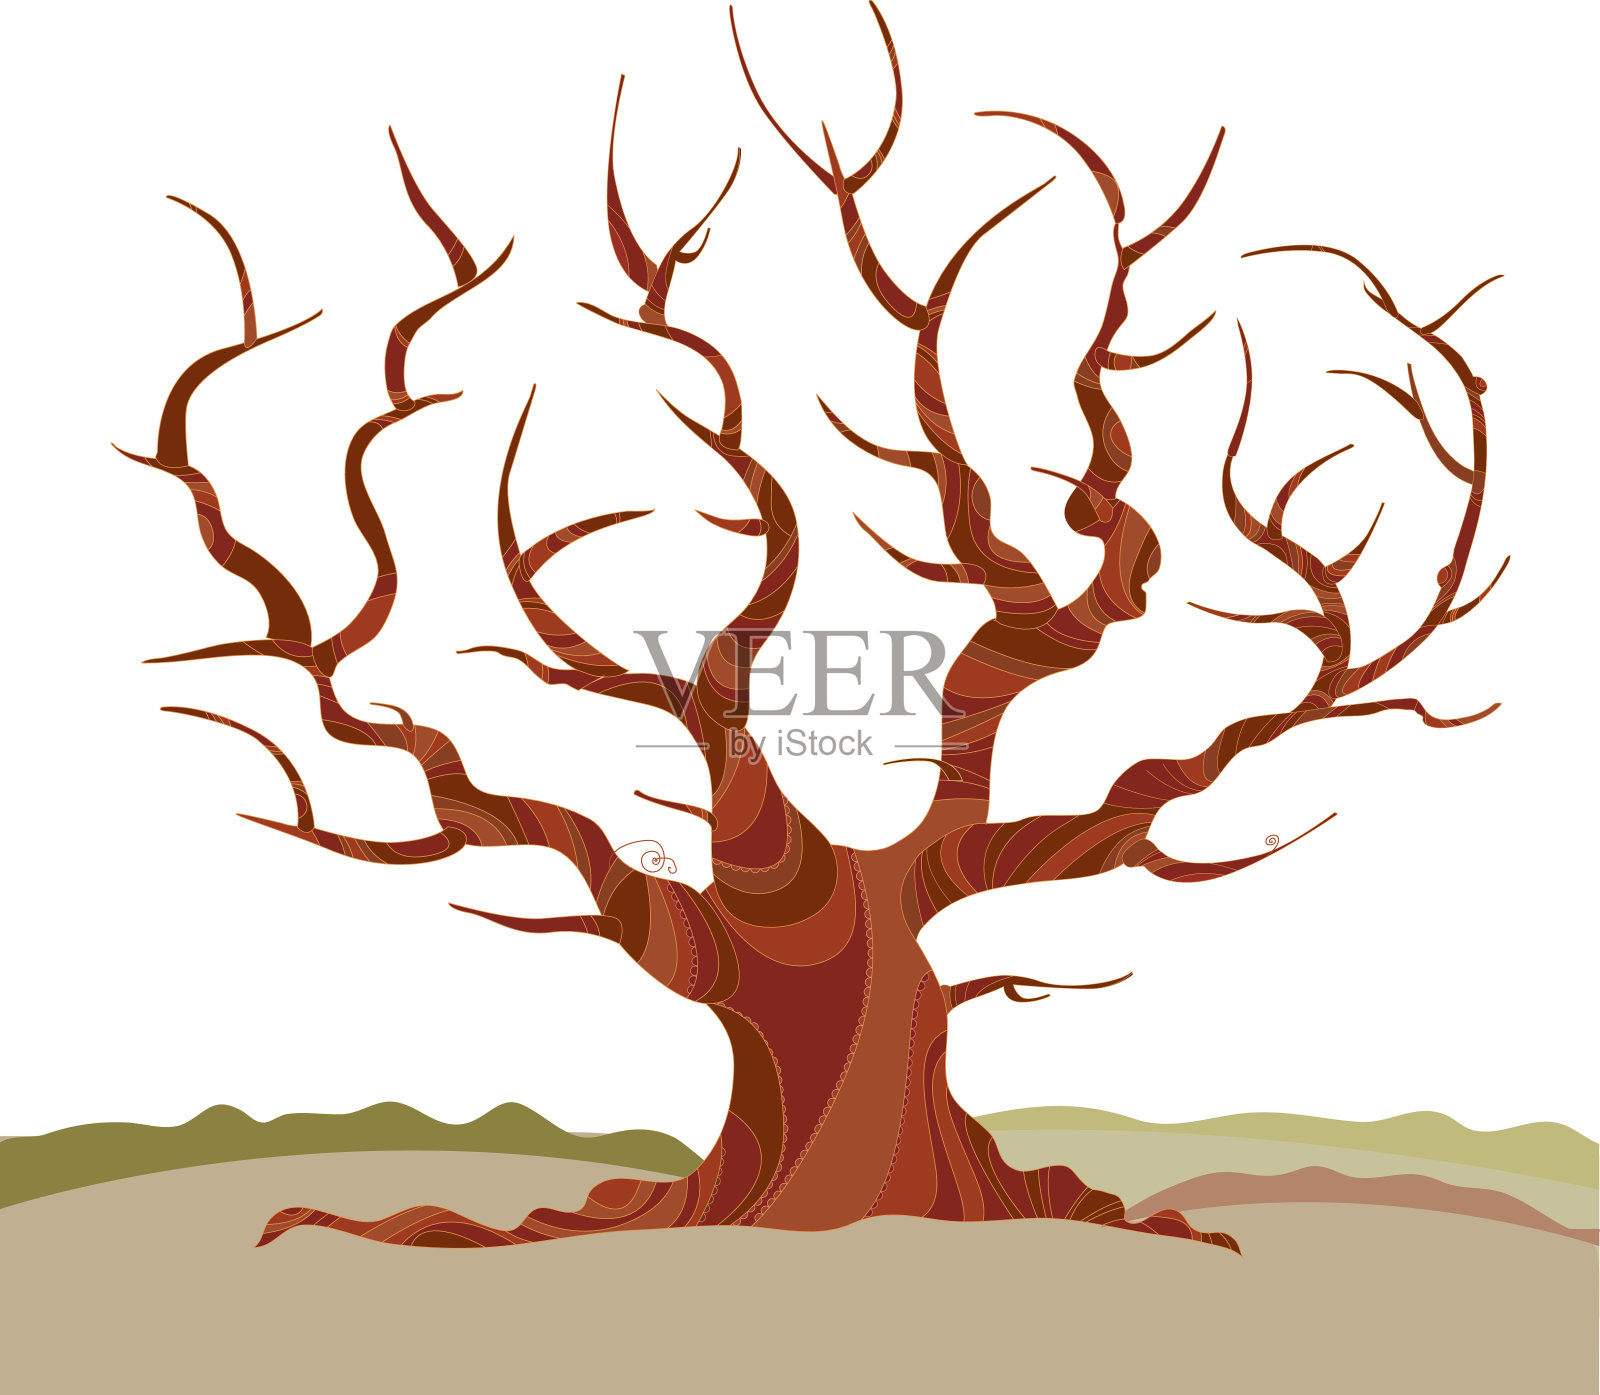 抽象树剪影矢量插图。概念海报与枯死的冬天树插画图片素材